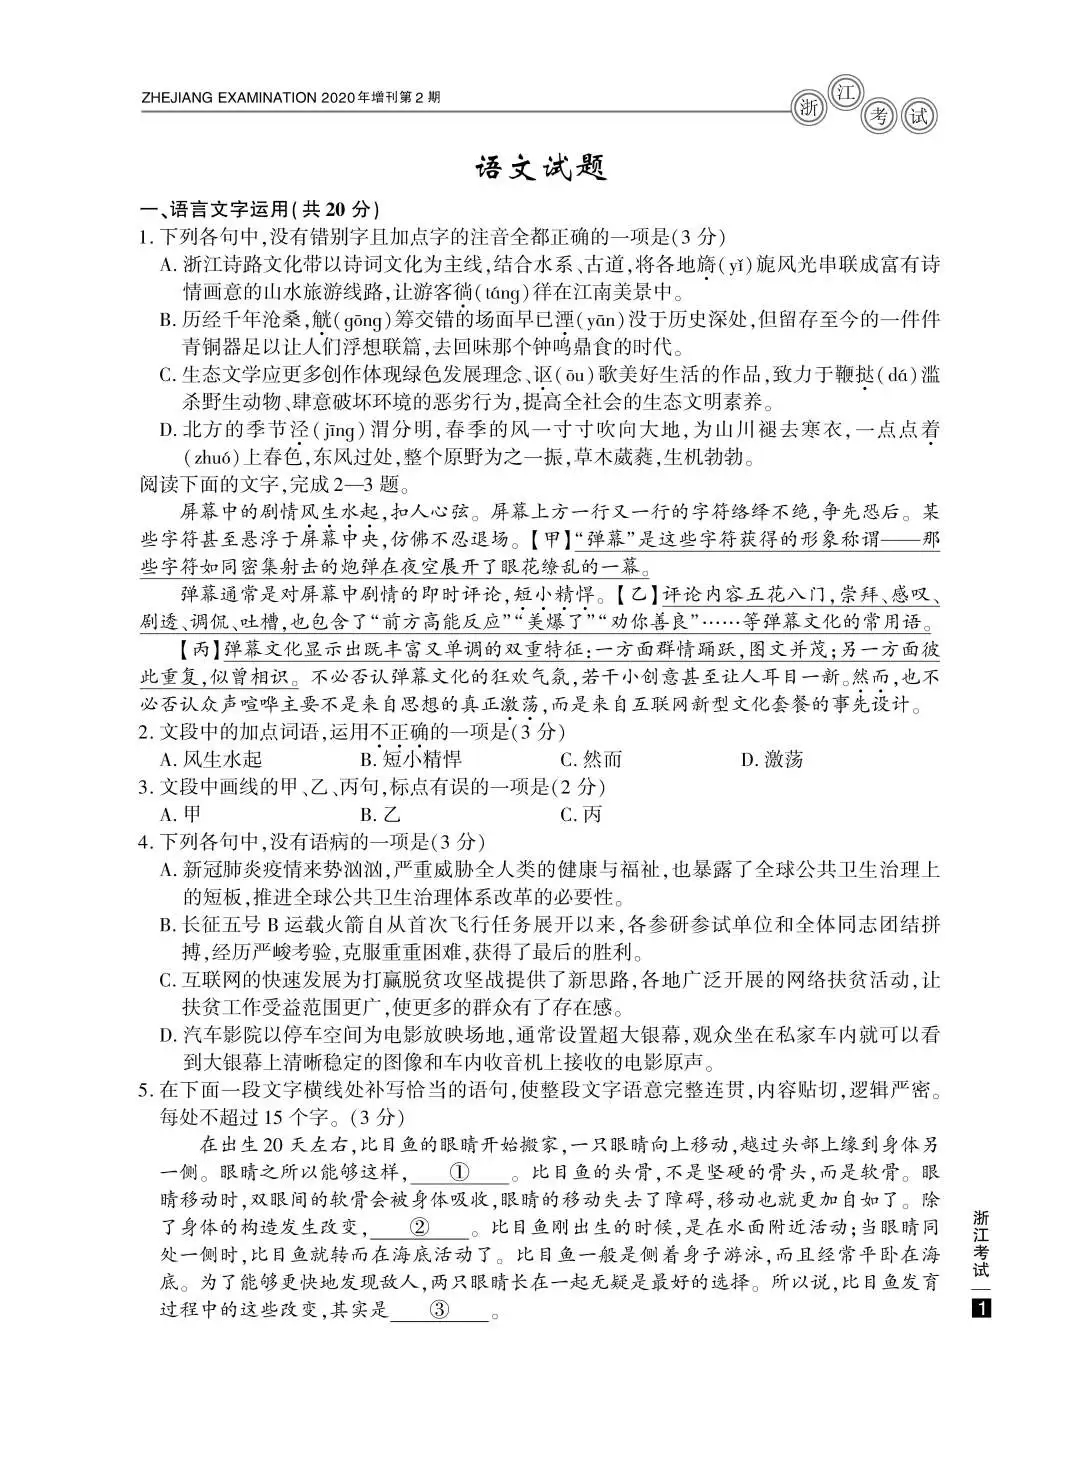 2020年浙江高考语文试题公布